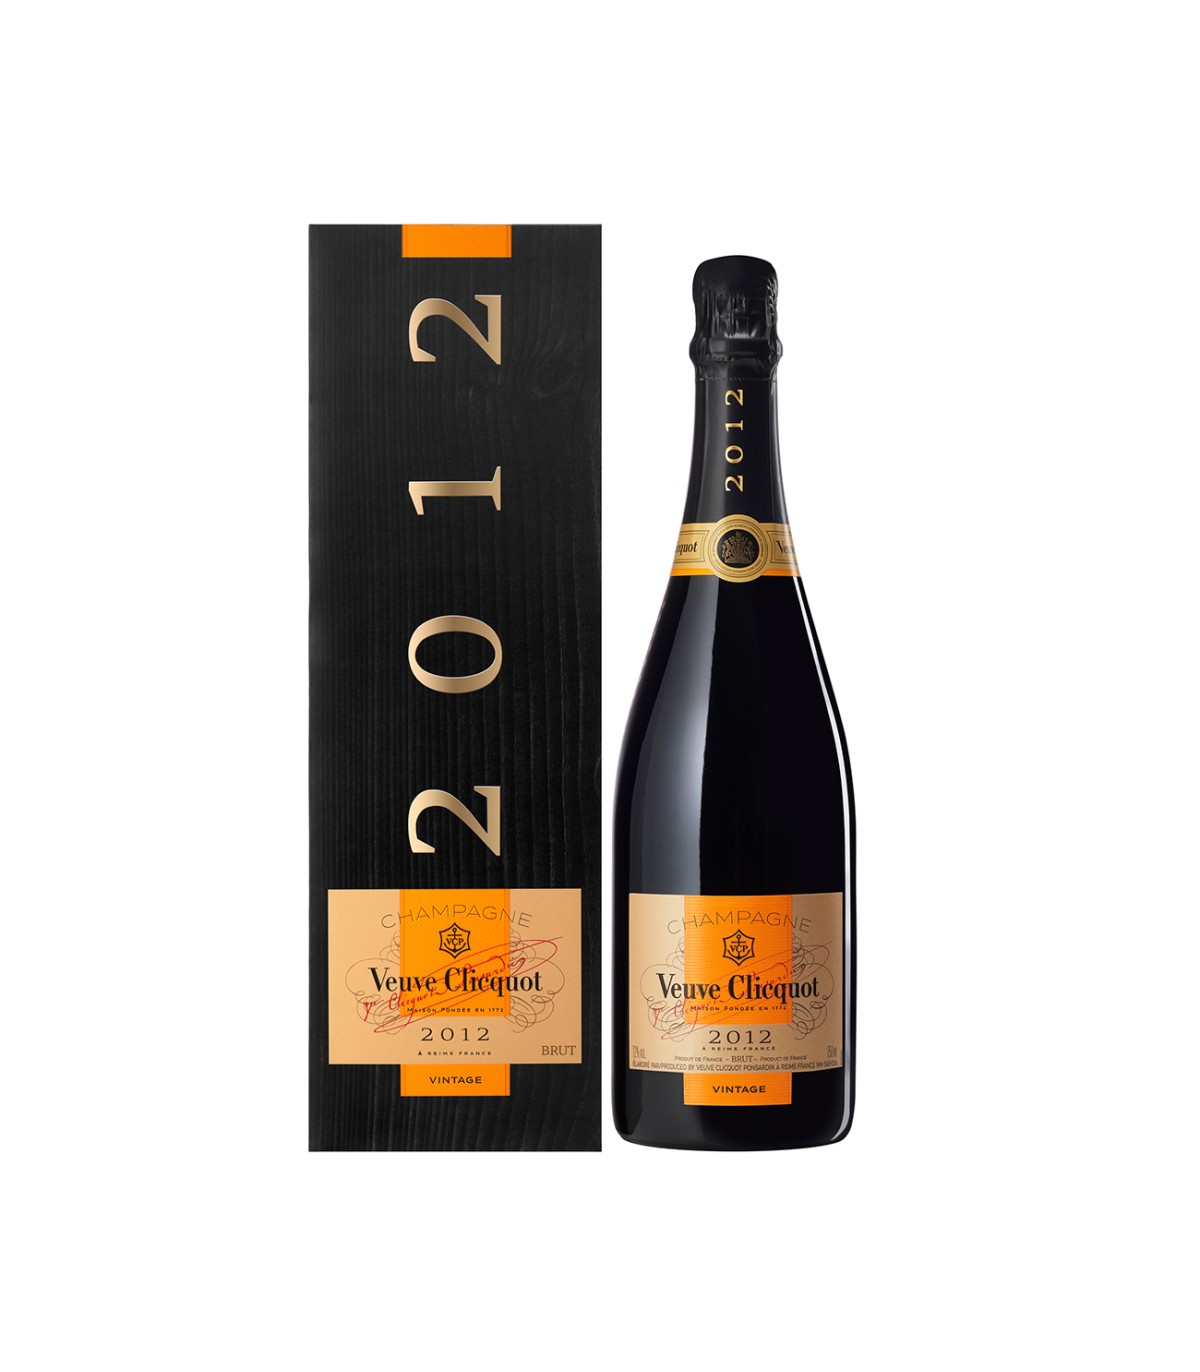 Veuve Clicquot Classic Champagne Gift Box